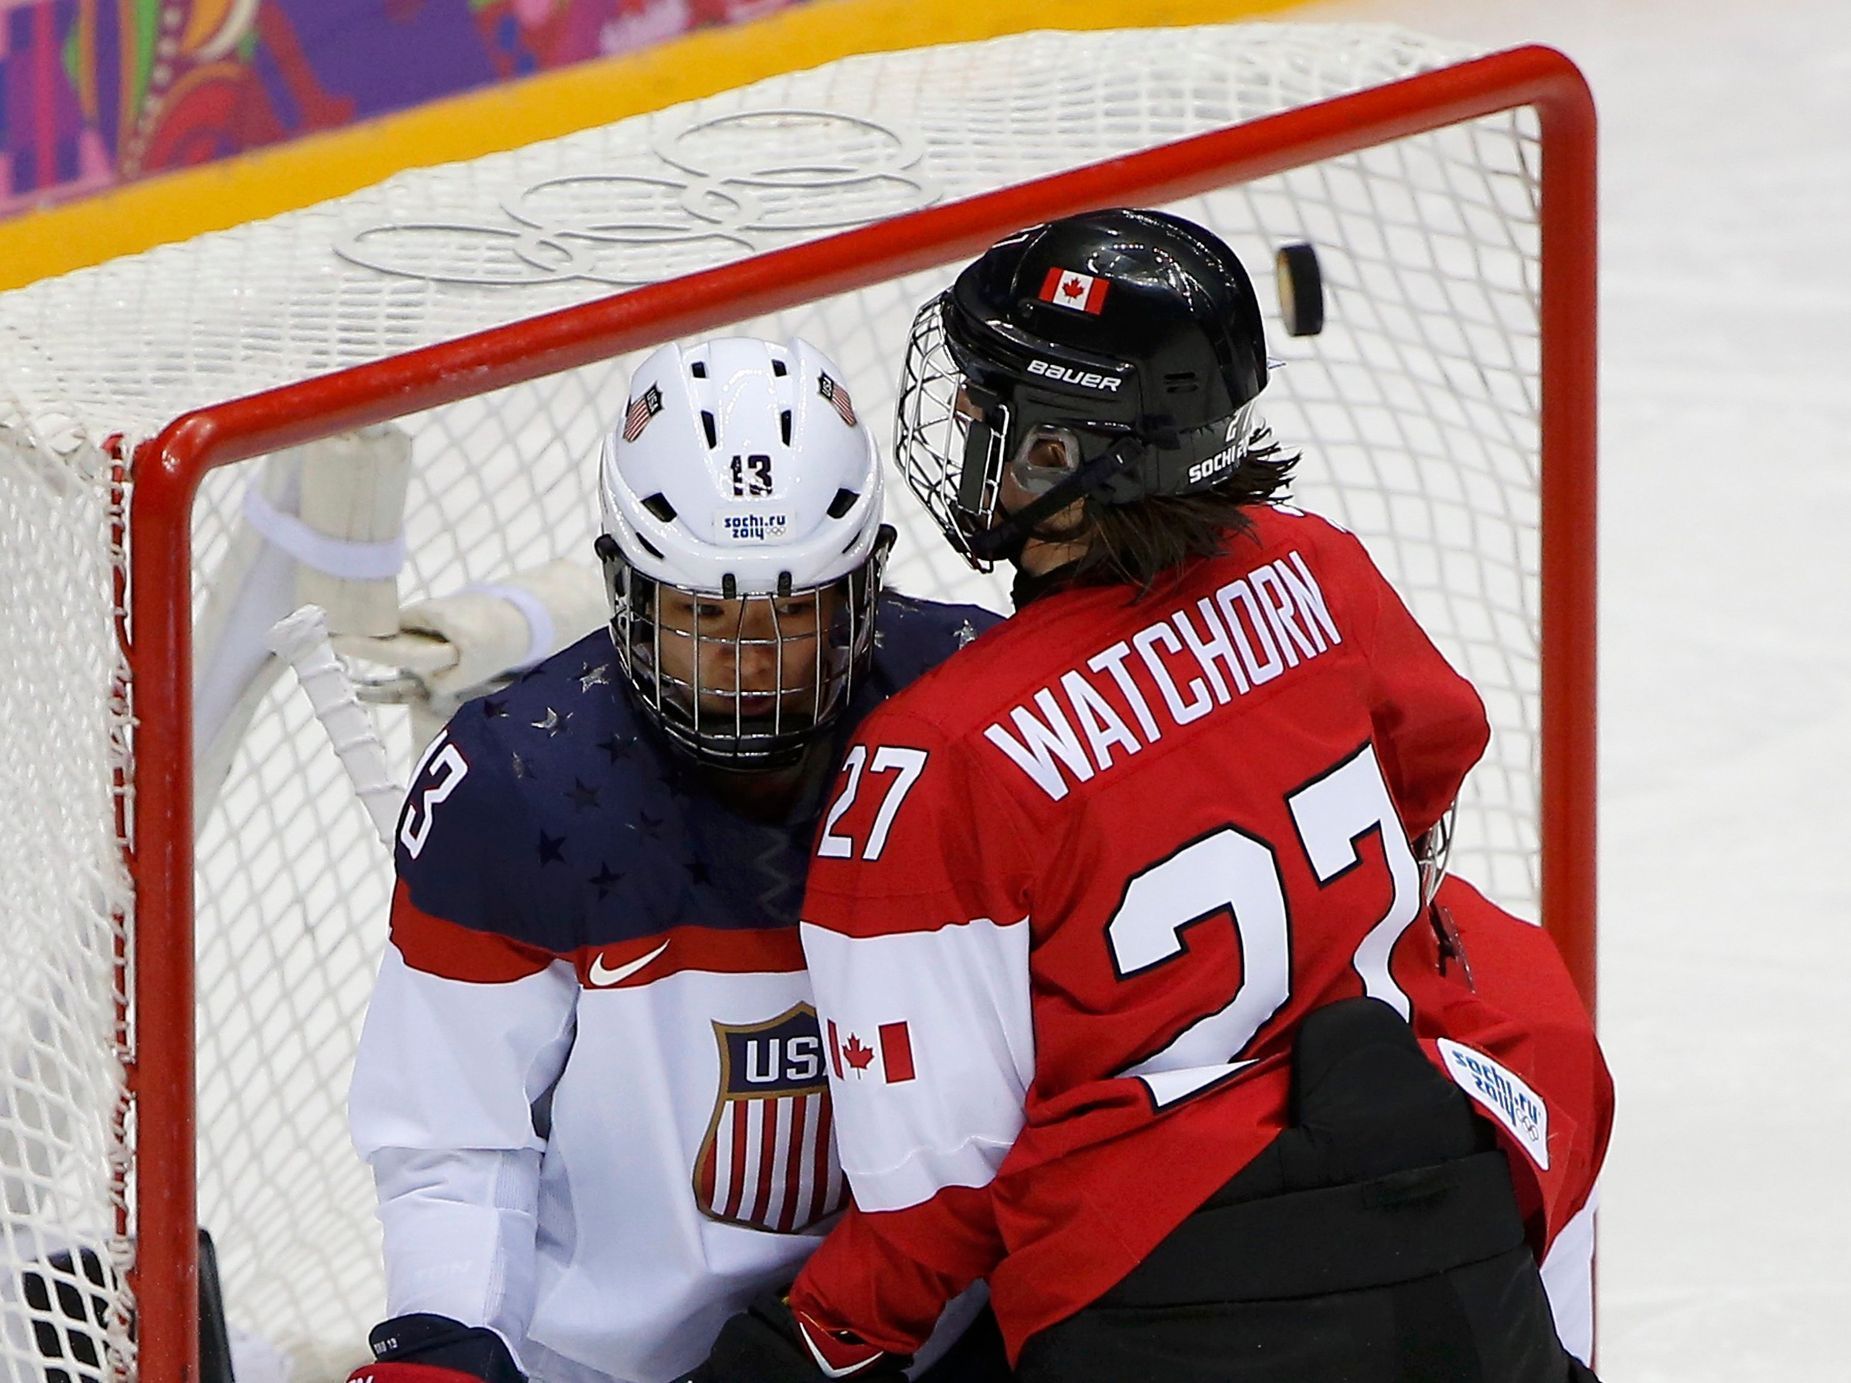 Soči 2014: Kanada - USA, Chuová, Watchornová (hokej, ženy, finále)